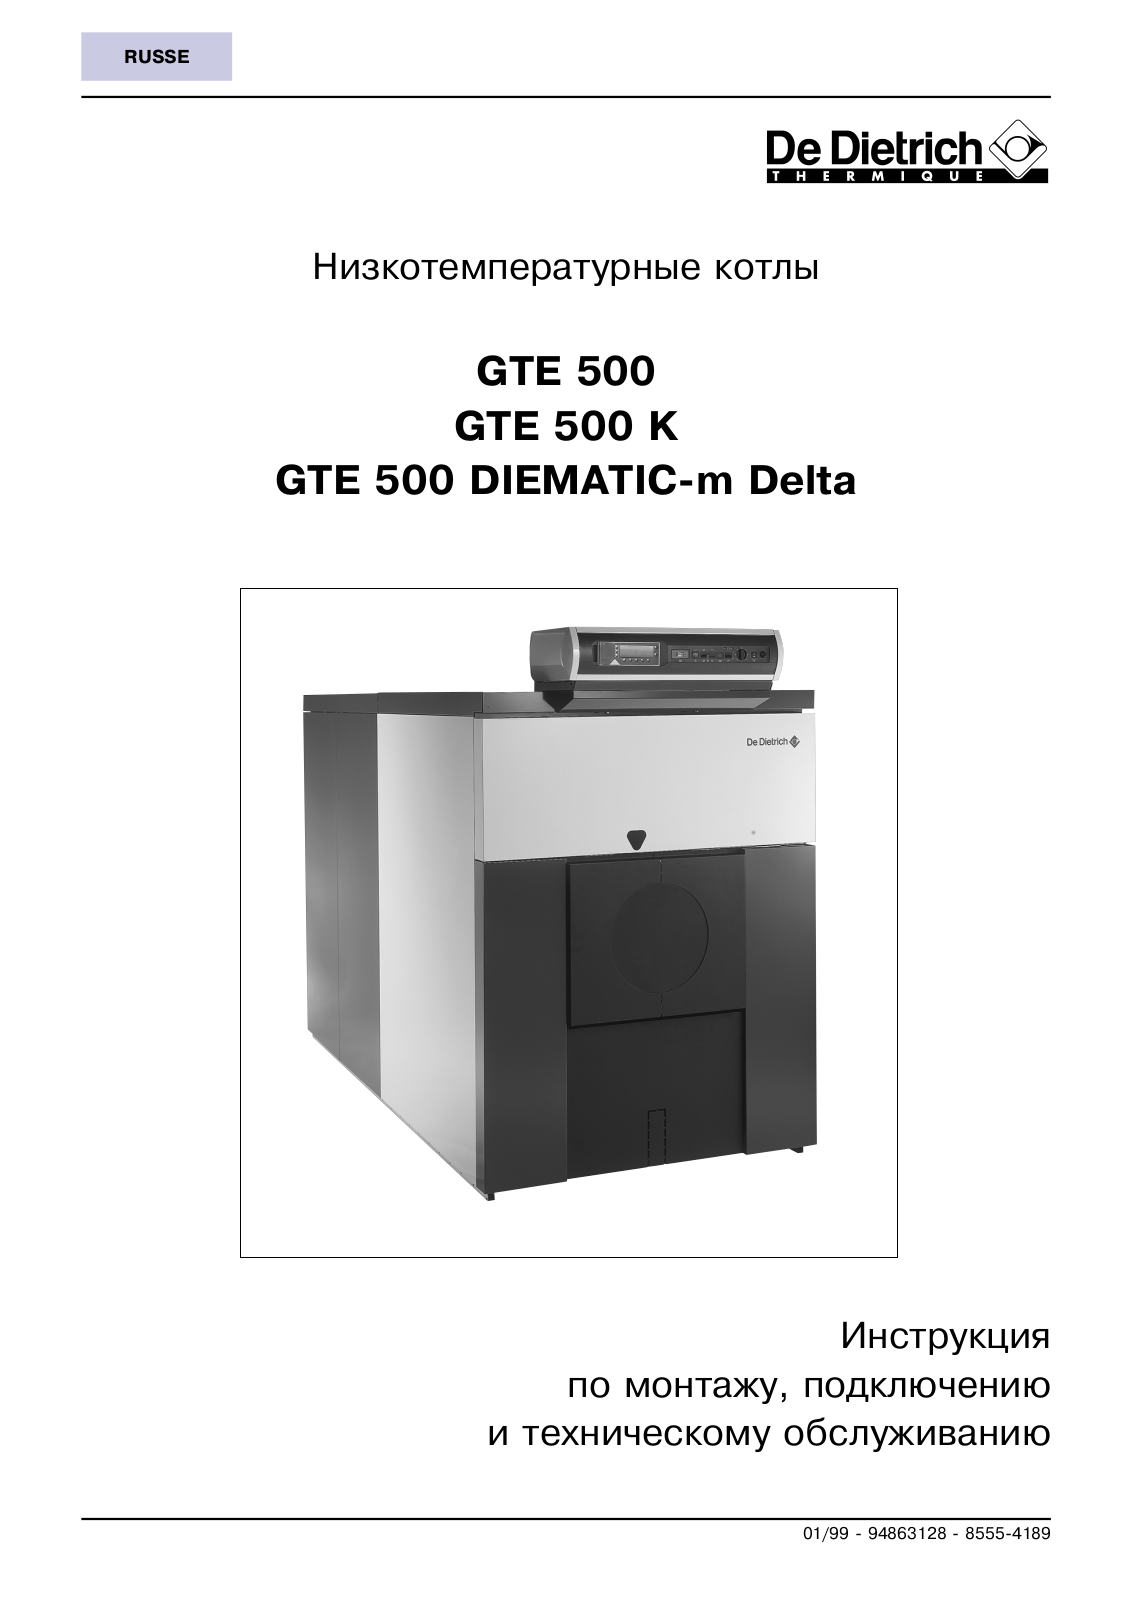 De dietrich GT 530-11 User Manual